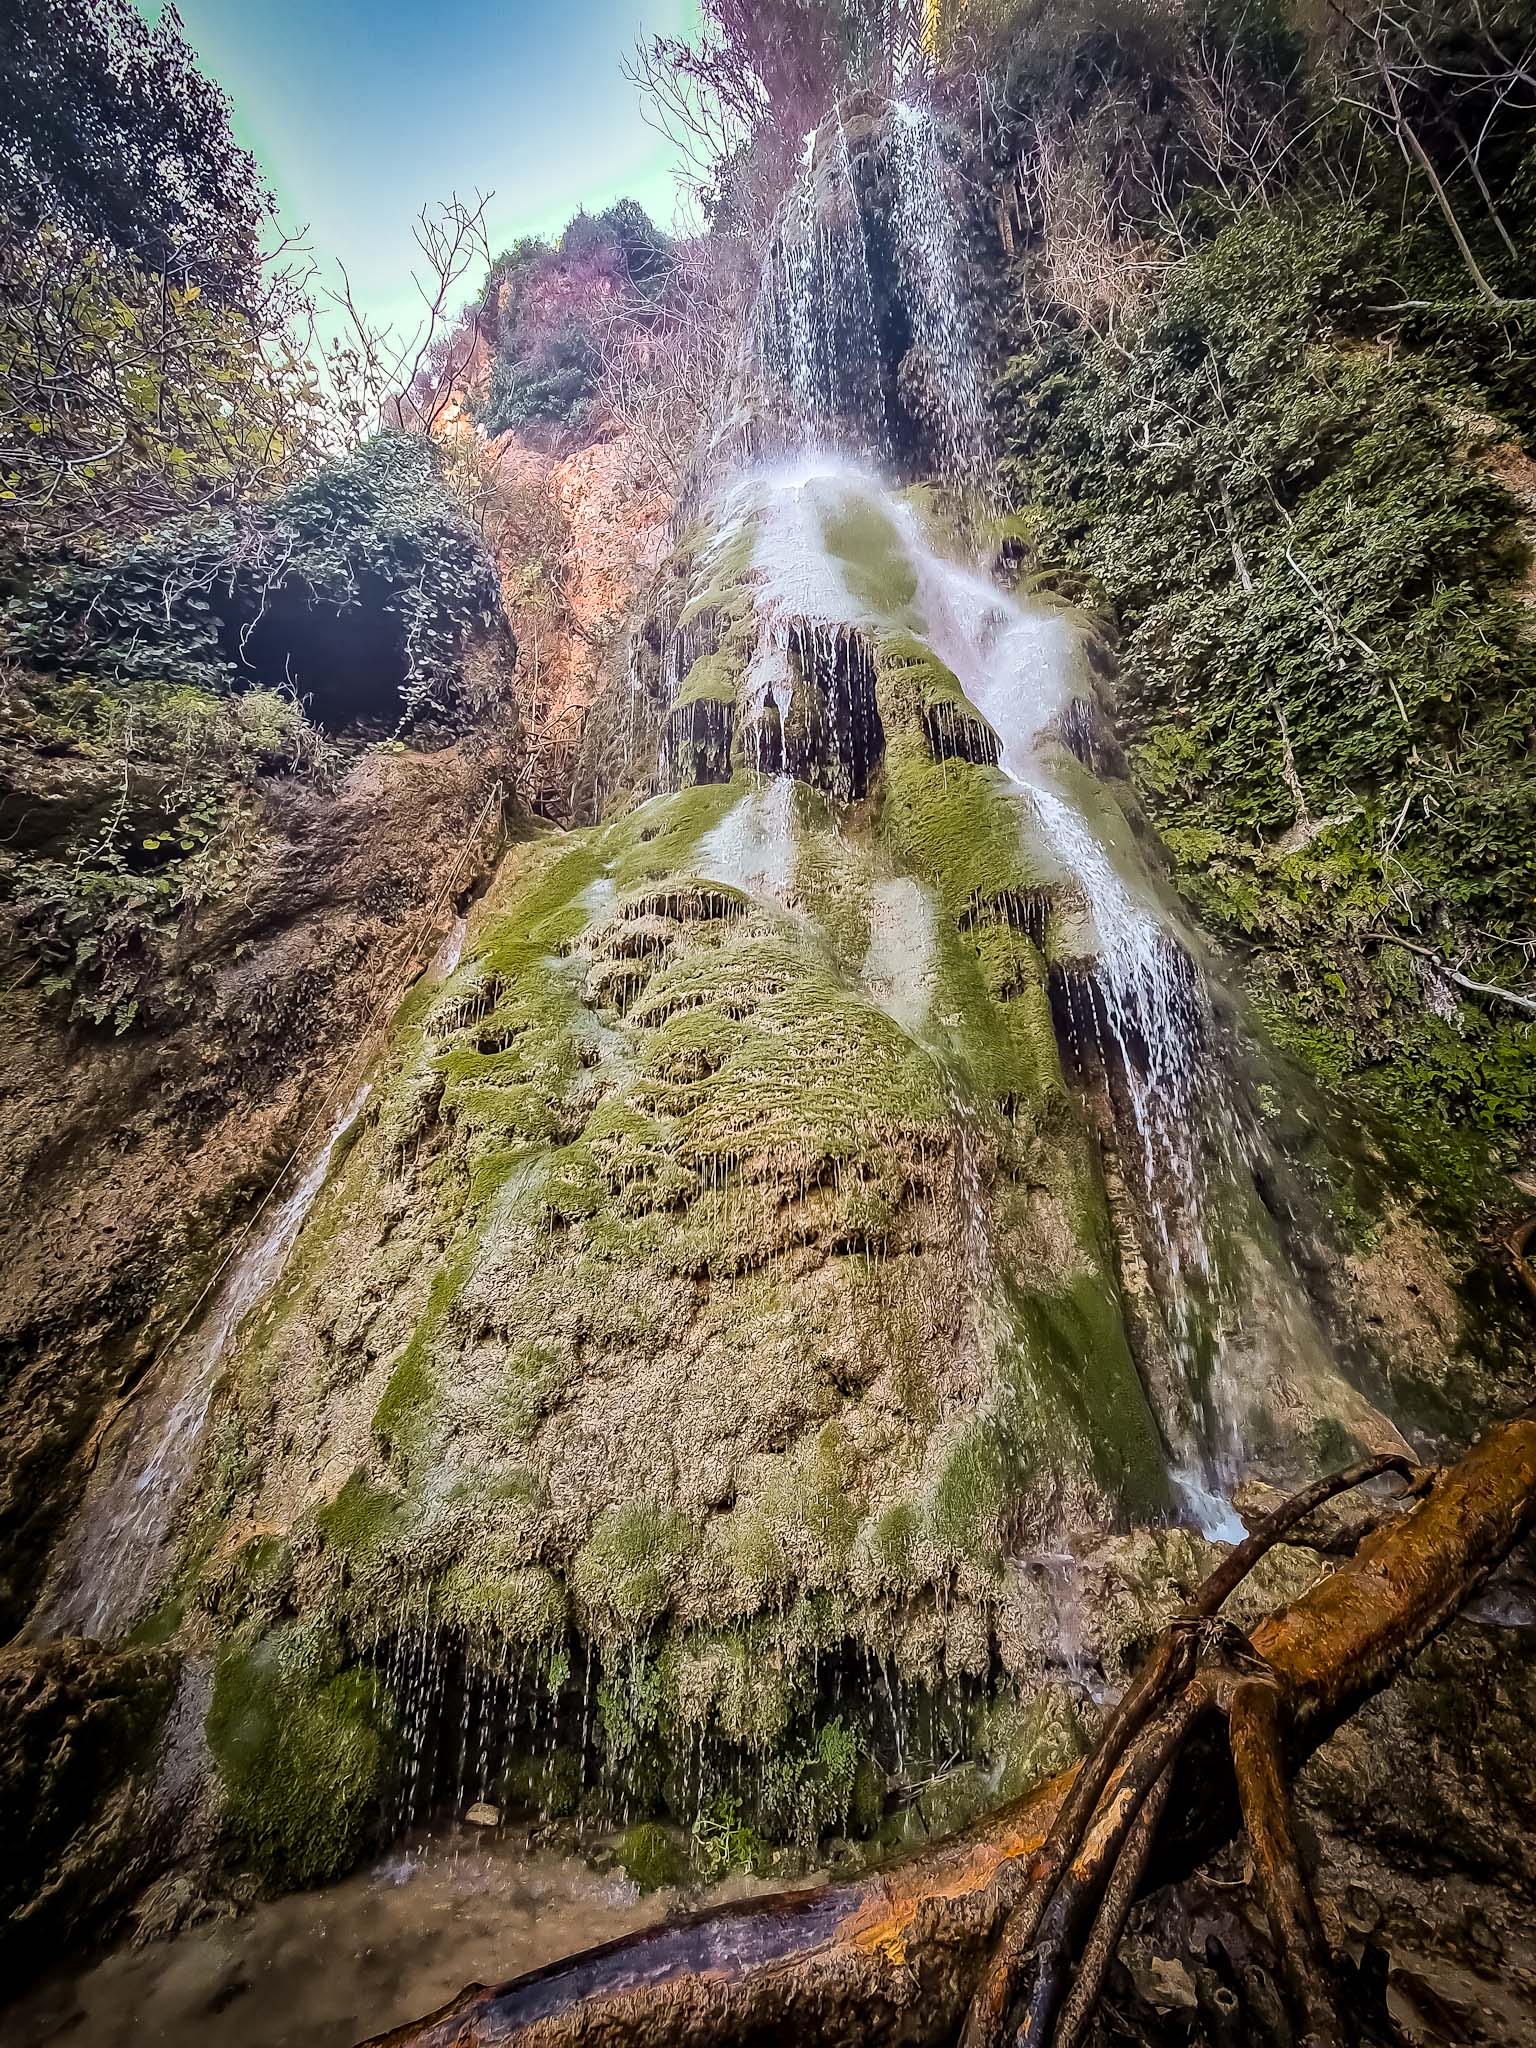 Waterfalls in Cyprus - Kremiotis Waterfall or Kritou Terra